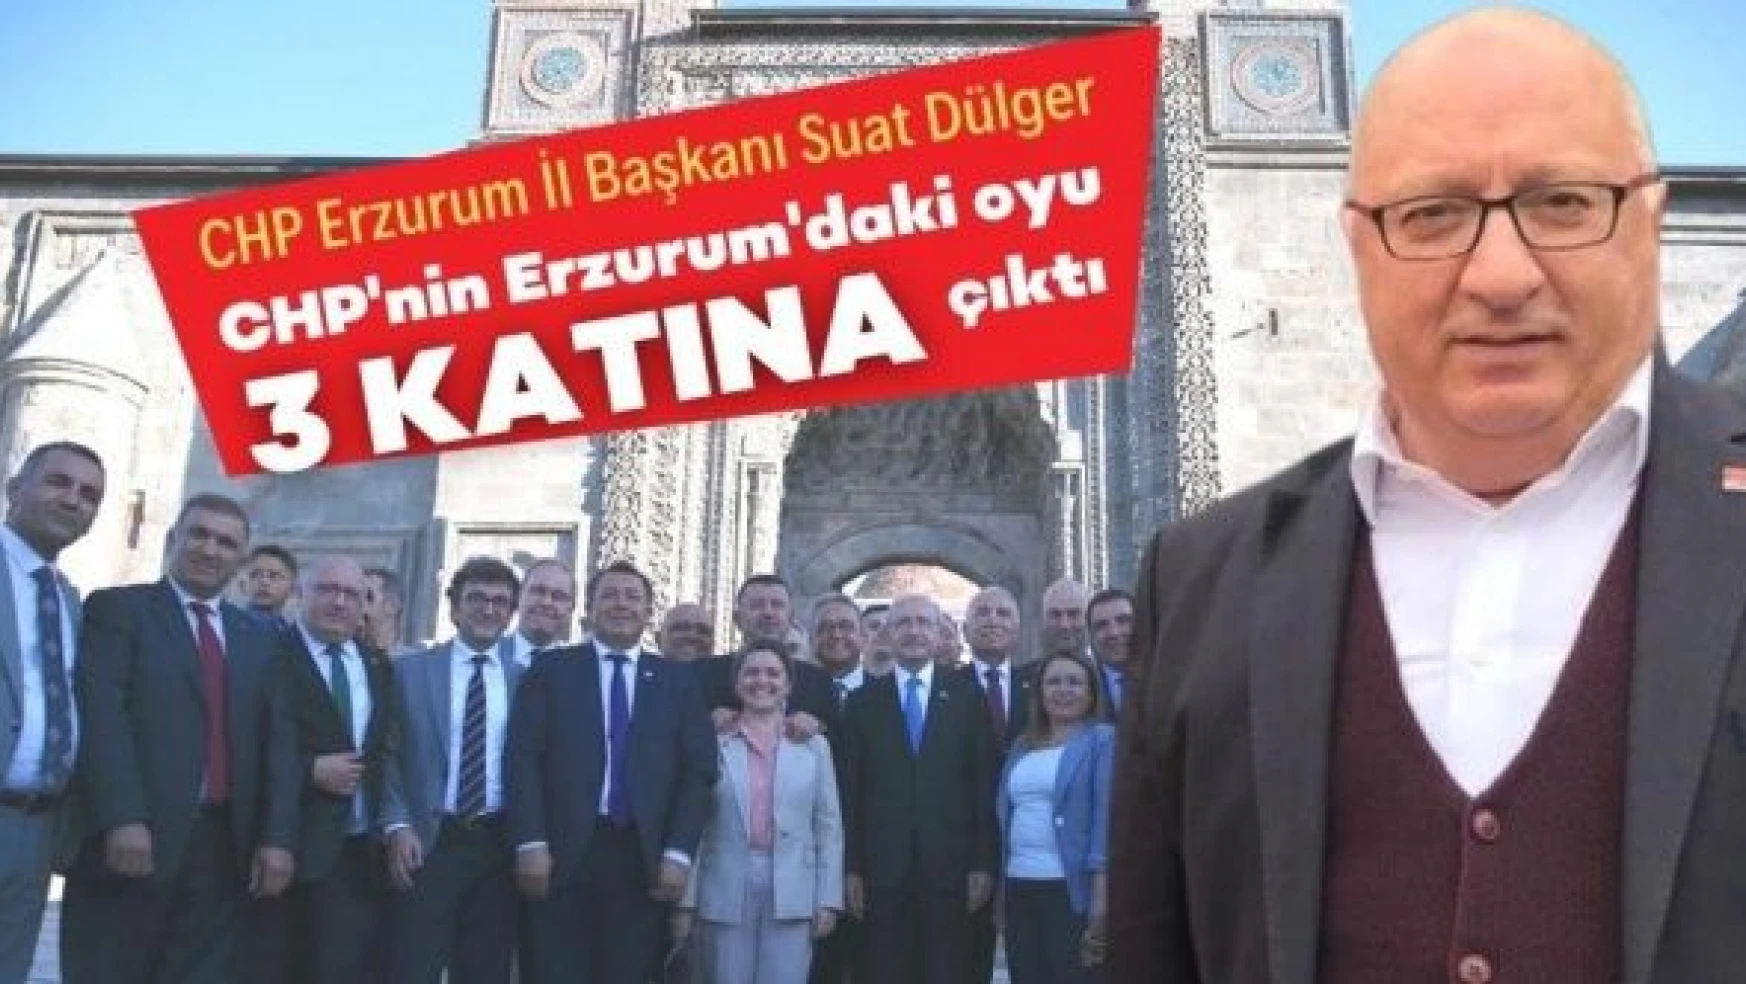 Erzurum İl Başkanı Dülger: 'CHP'nin oyu 3 katına çıktı'